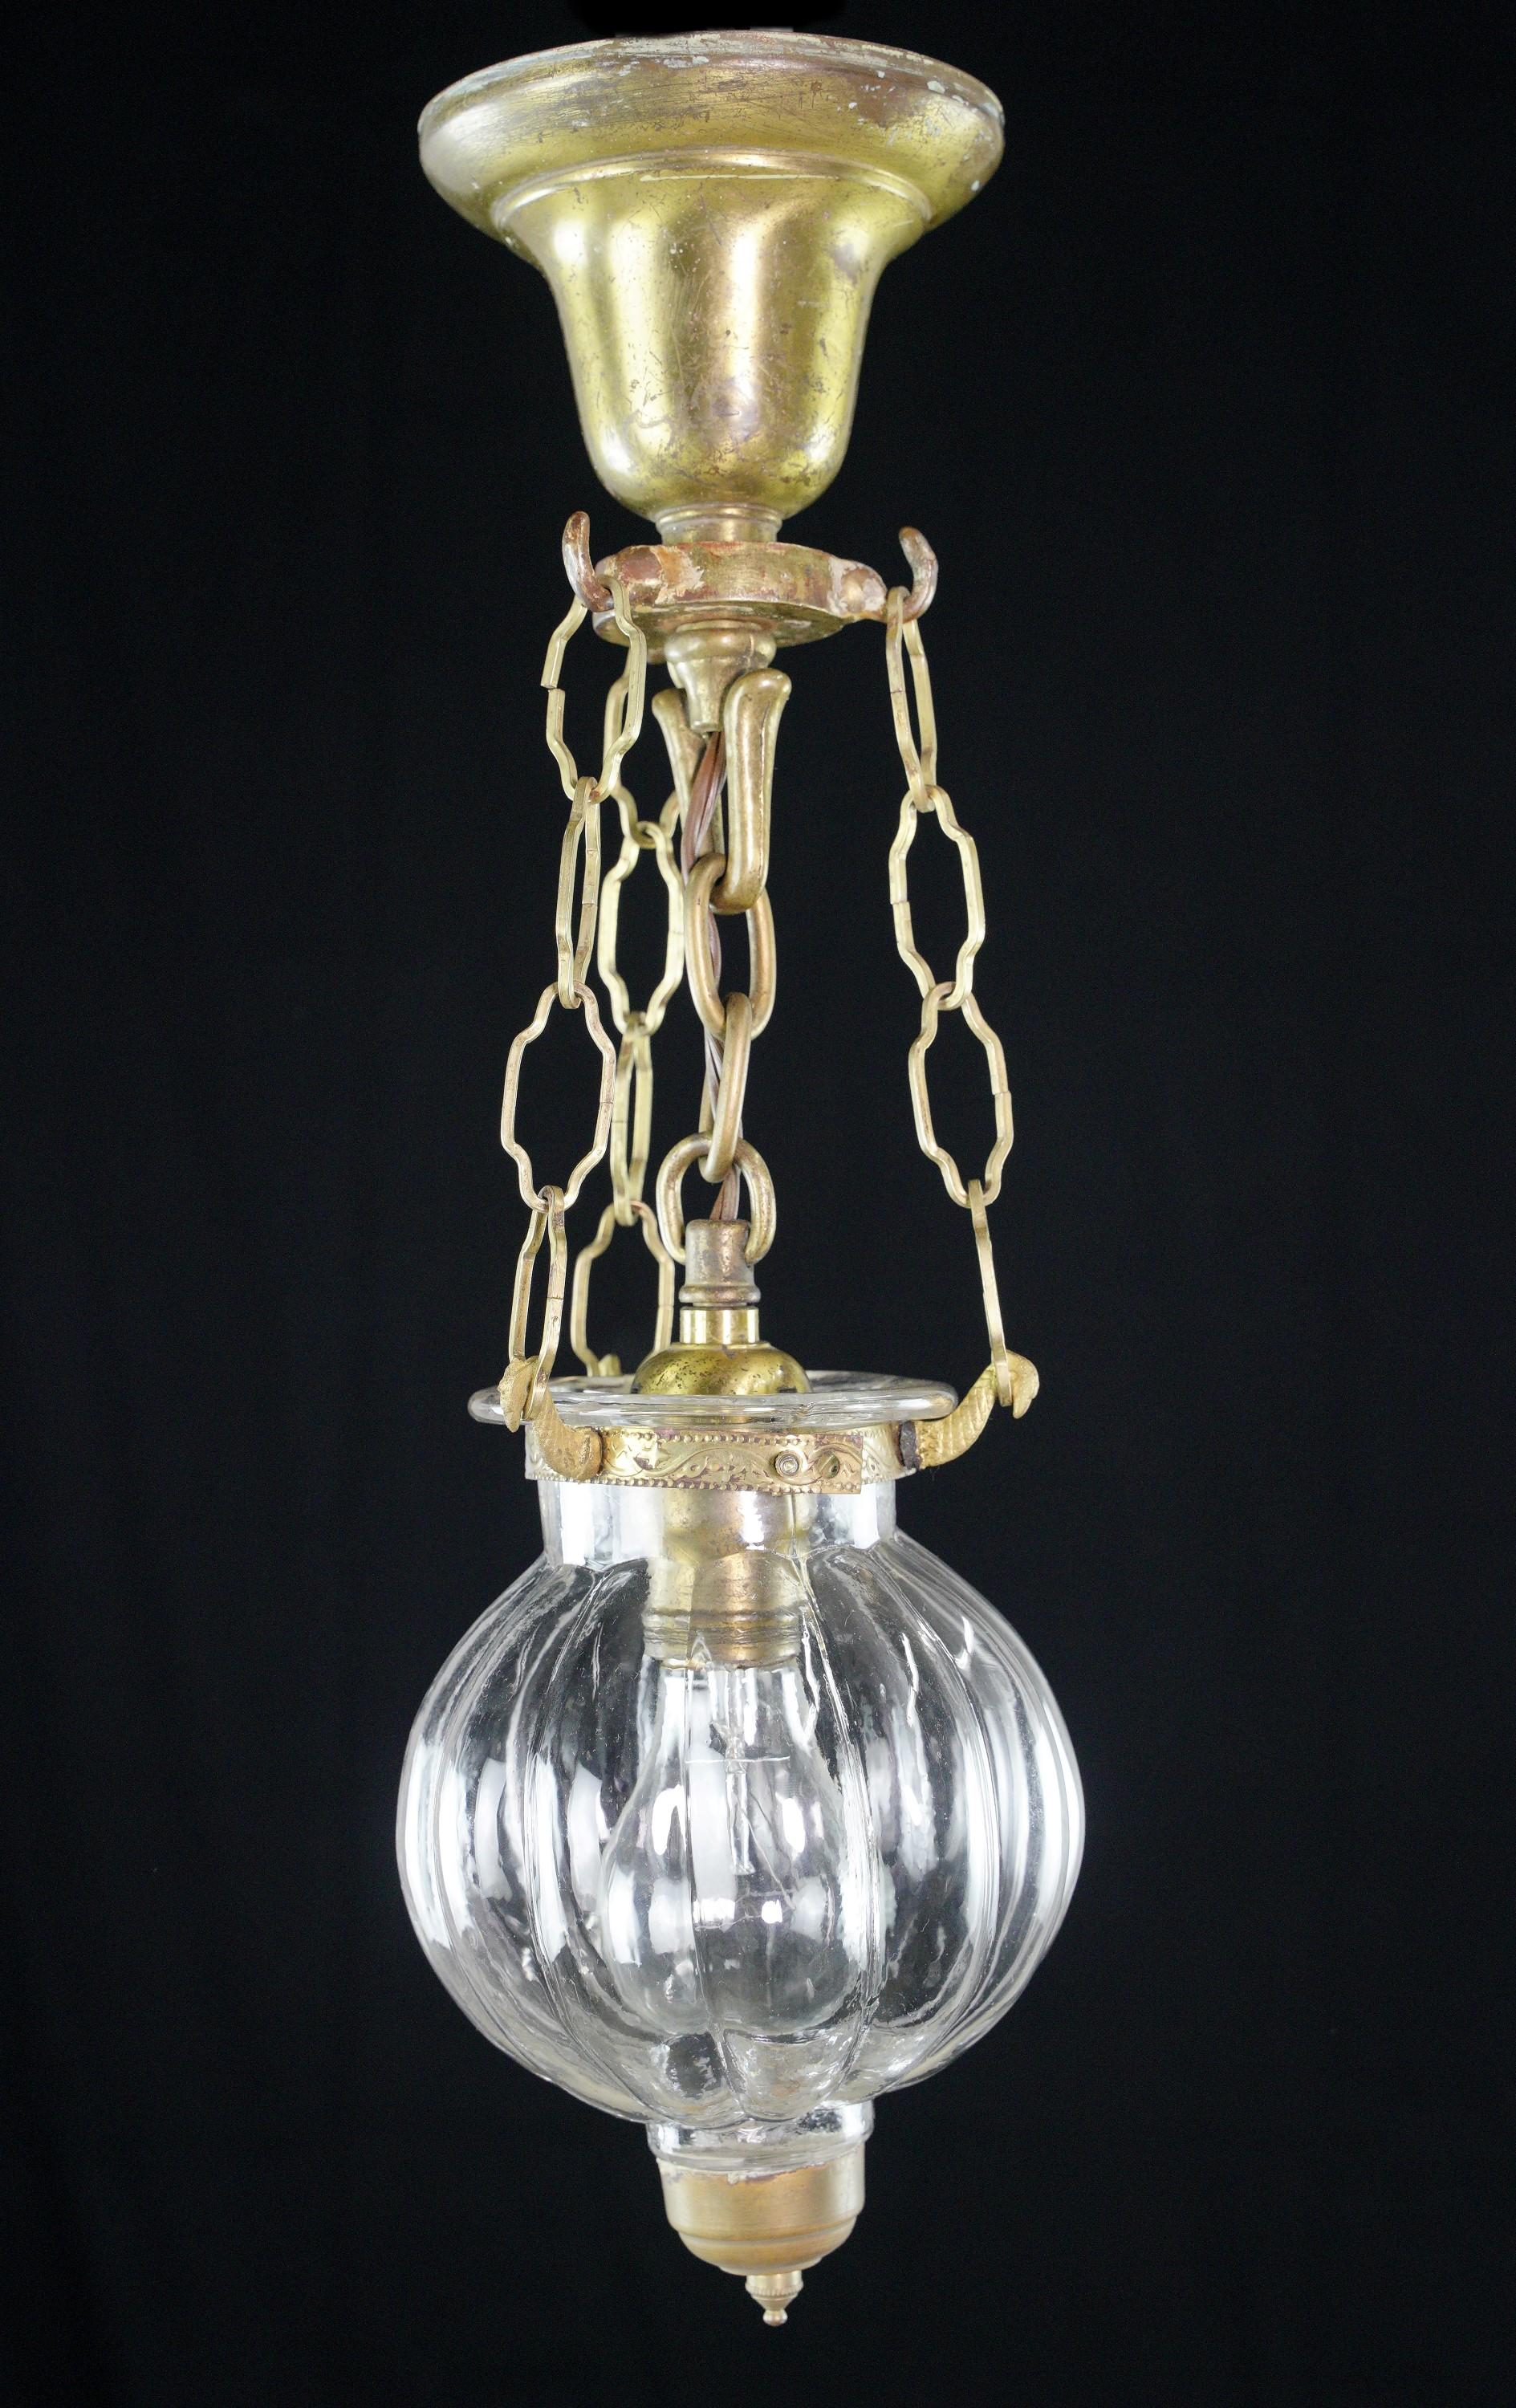 La suspension cloche en verre vintage en forme d'oignon est un luminaire nostalgique qui allie le charme du laiton brossé, la construction en acier et une boule en verre transparent, créant une ambiance vintage captivante dans n'importe quel espace.